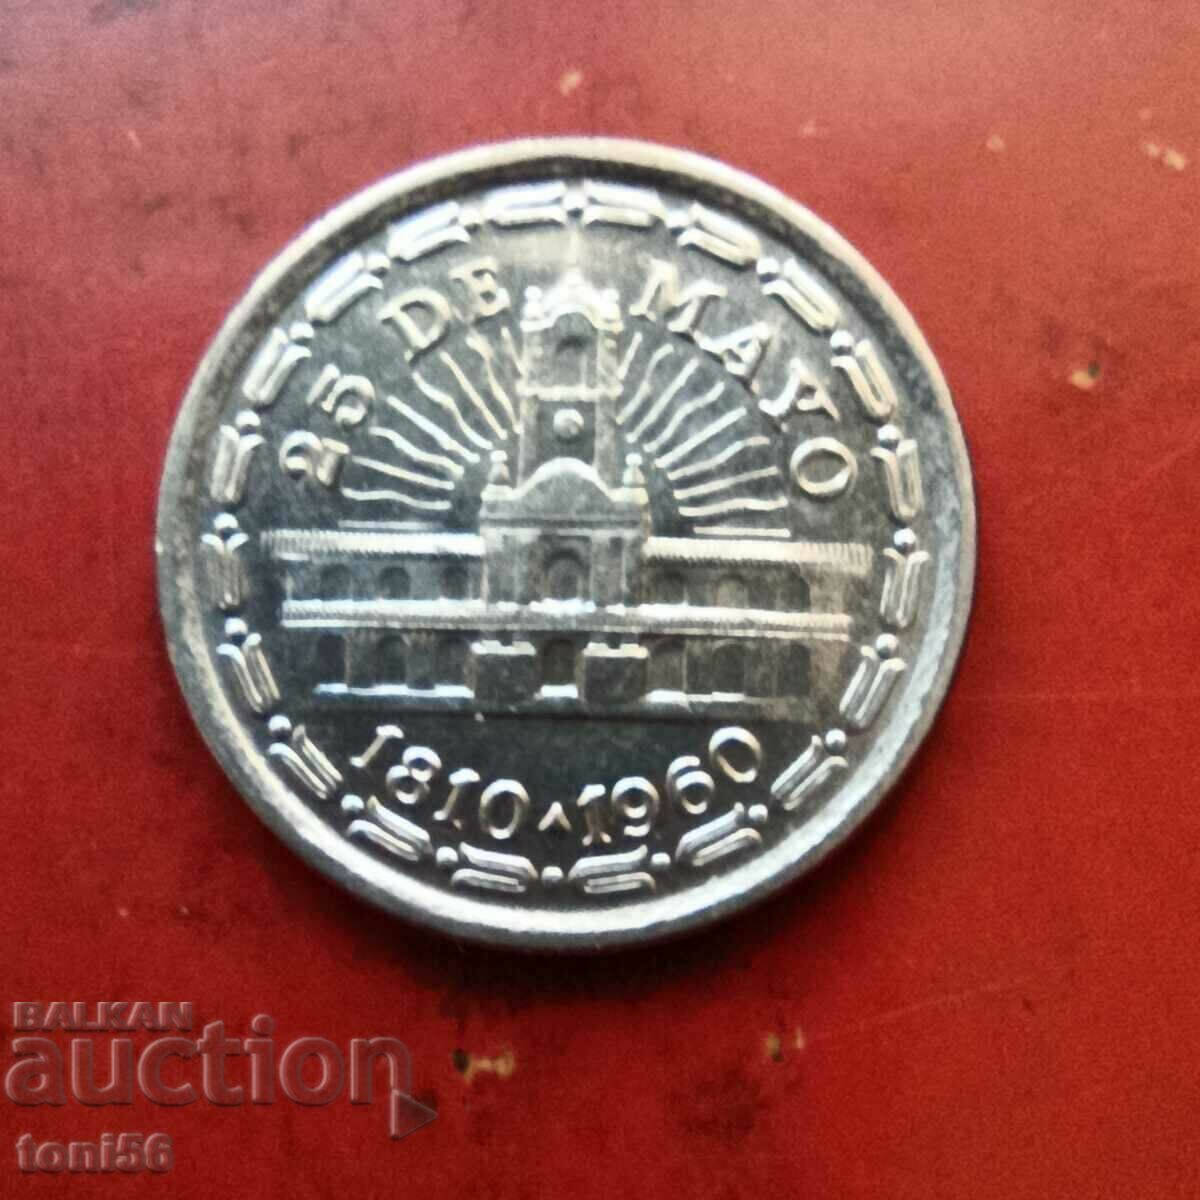 Argentina 1 peso 1978